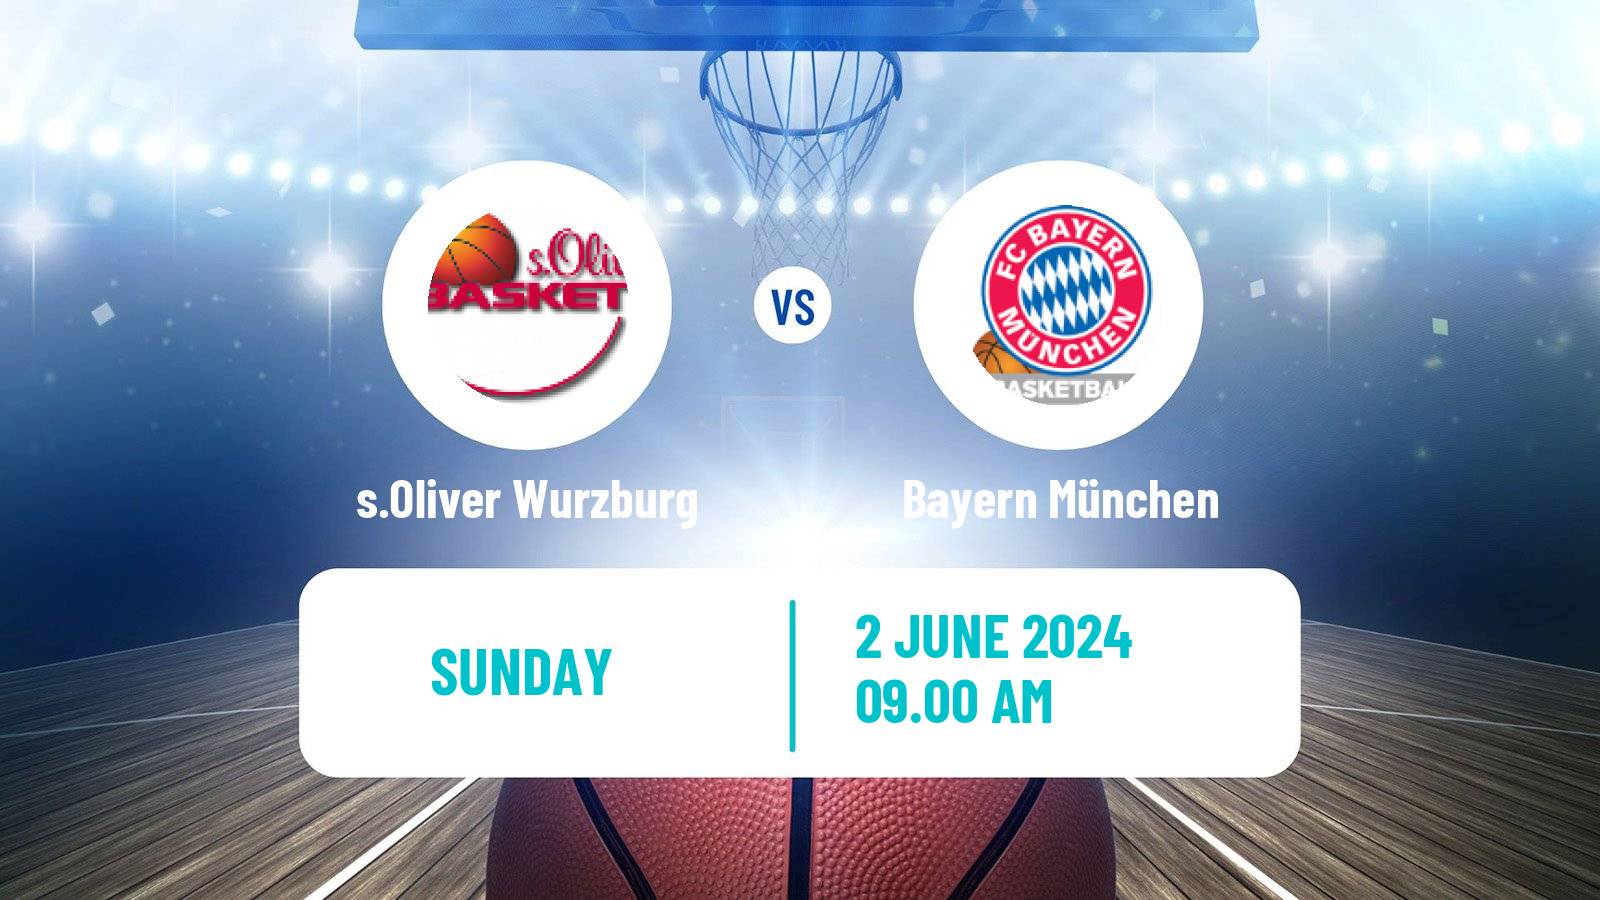 Basketball German BBL s.Oliver Wurzburg - Bayern München